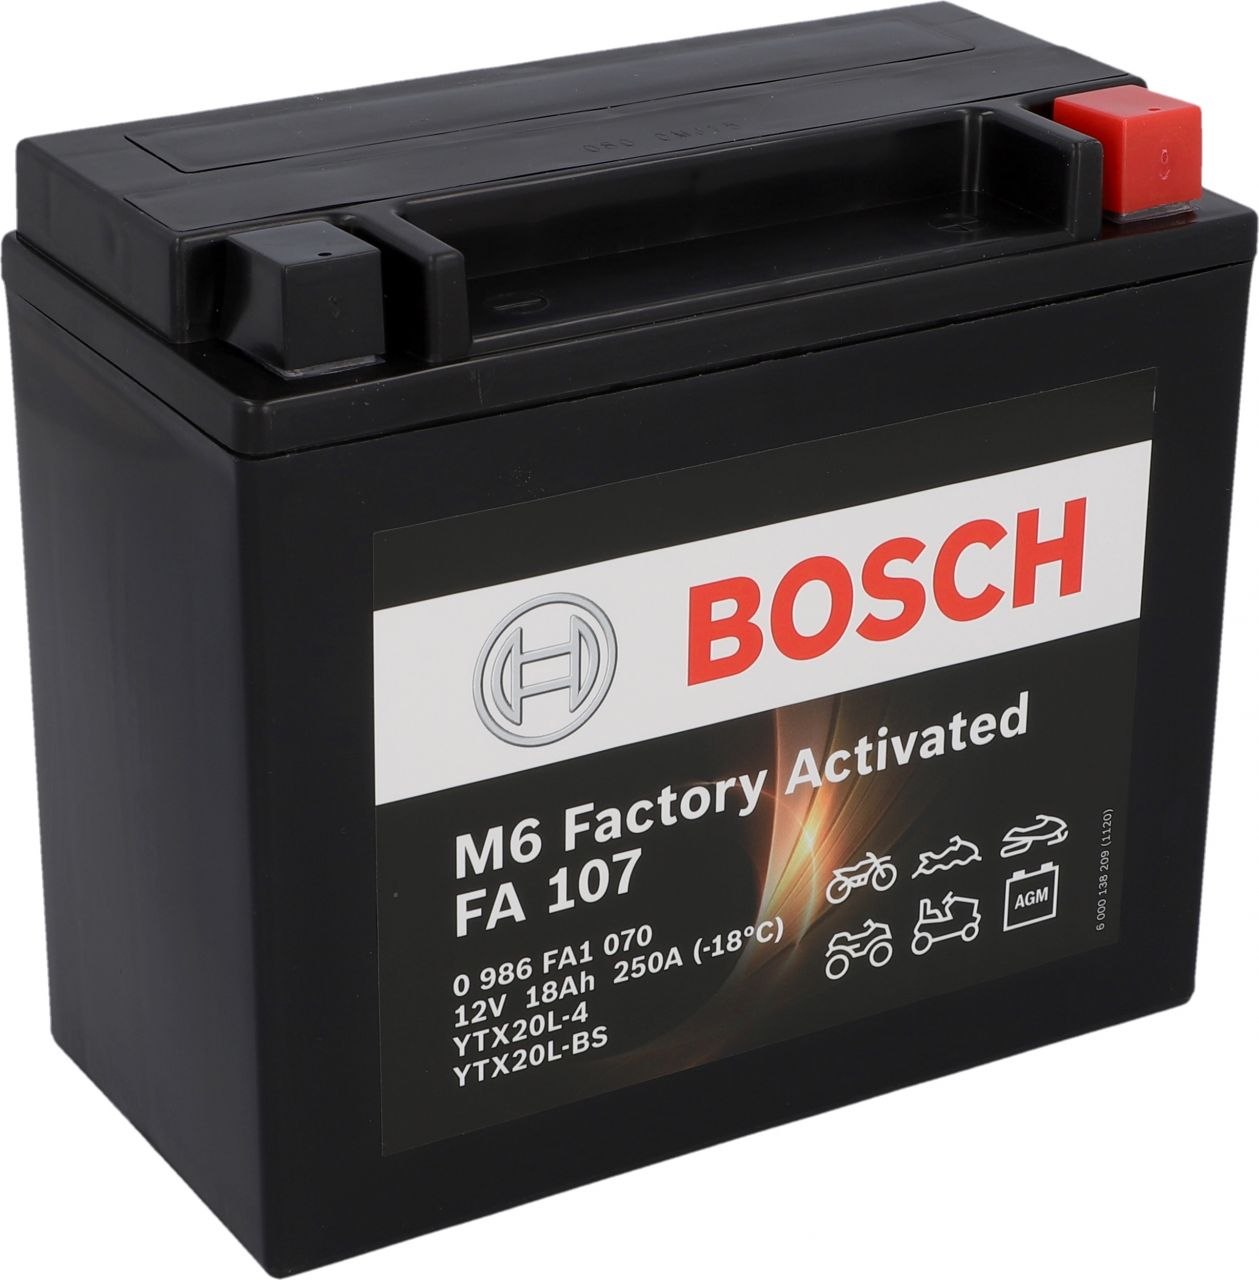 Bosch Automotive Bosch Gel Motorradbatterie 18Ah 250A GLO680456078